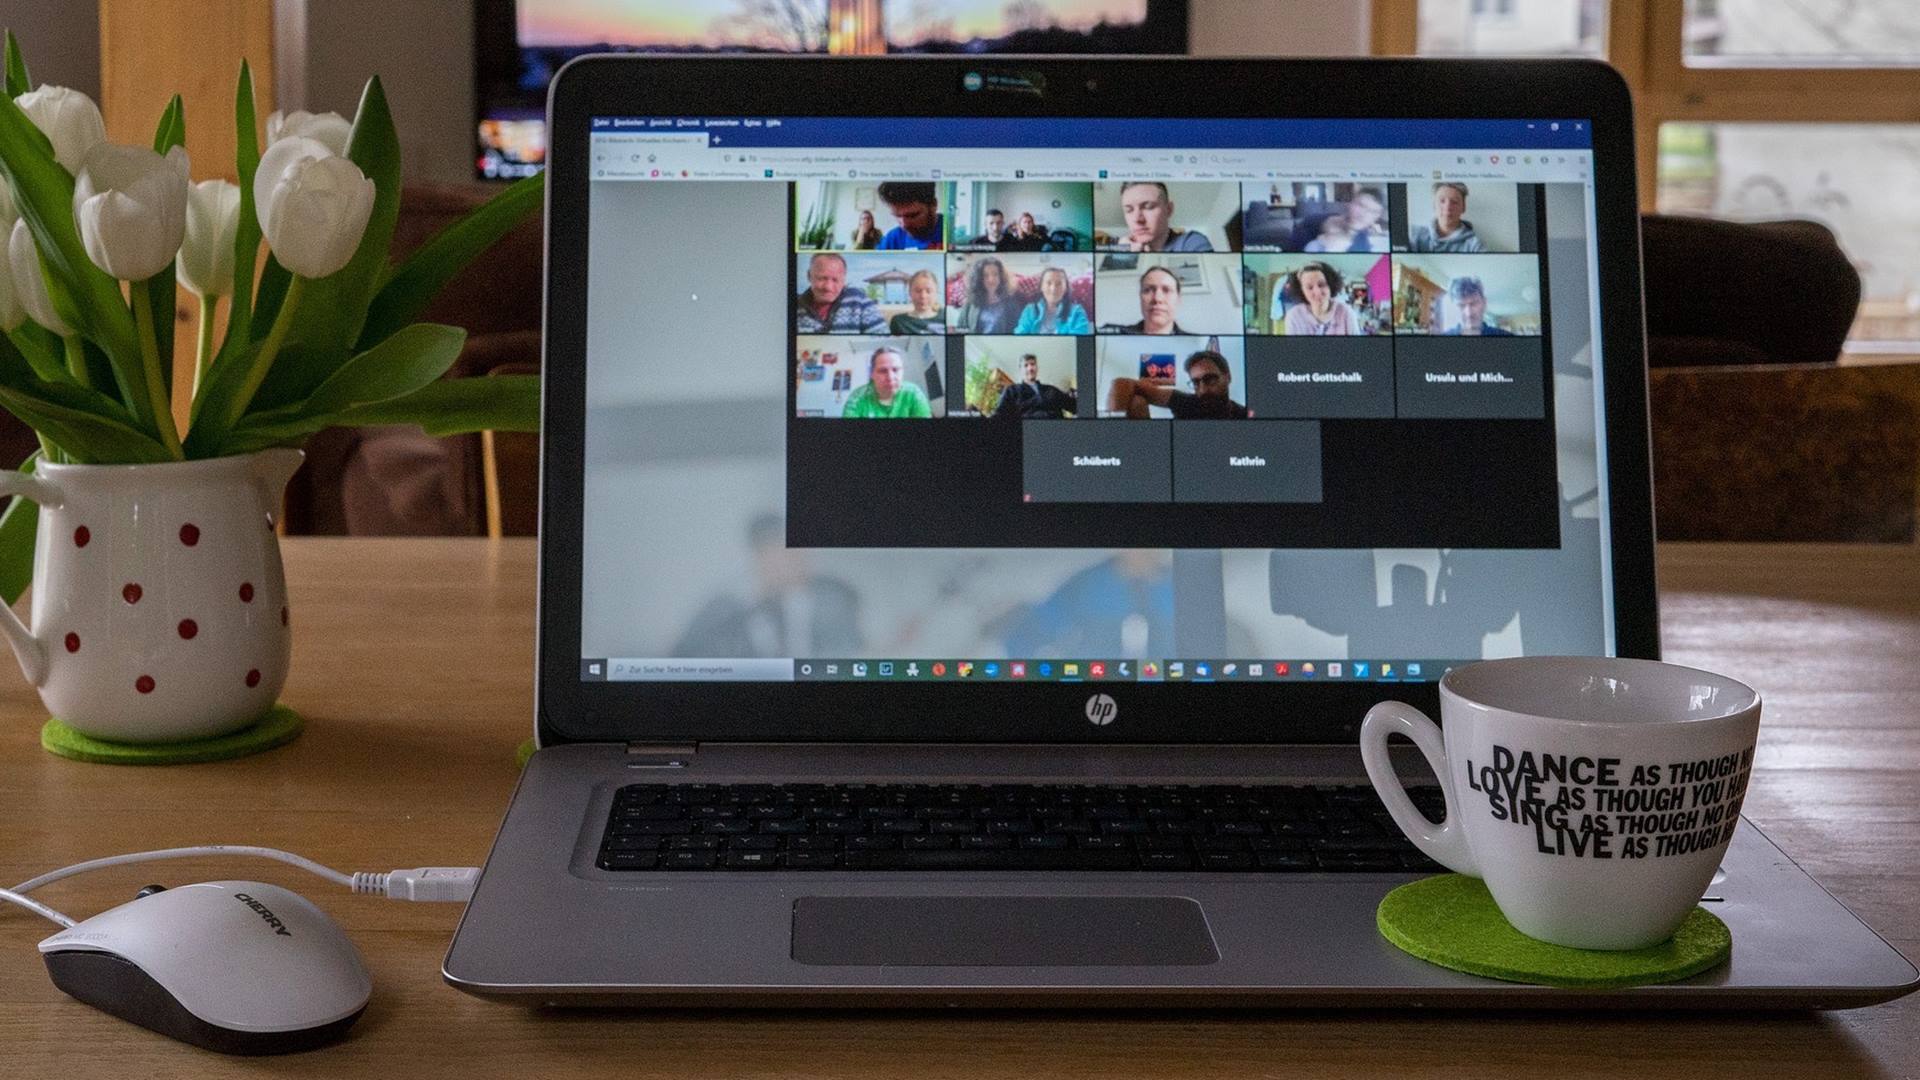 Auf dem Monitor eines Laptops sind mehrere Teilnehmerbilder einer Online-Konferenz zu sehen.